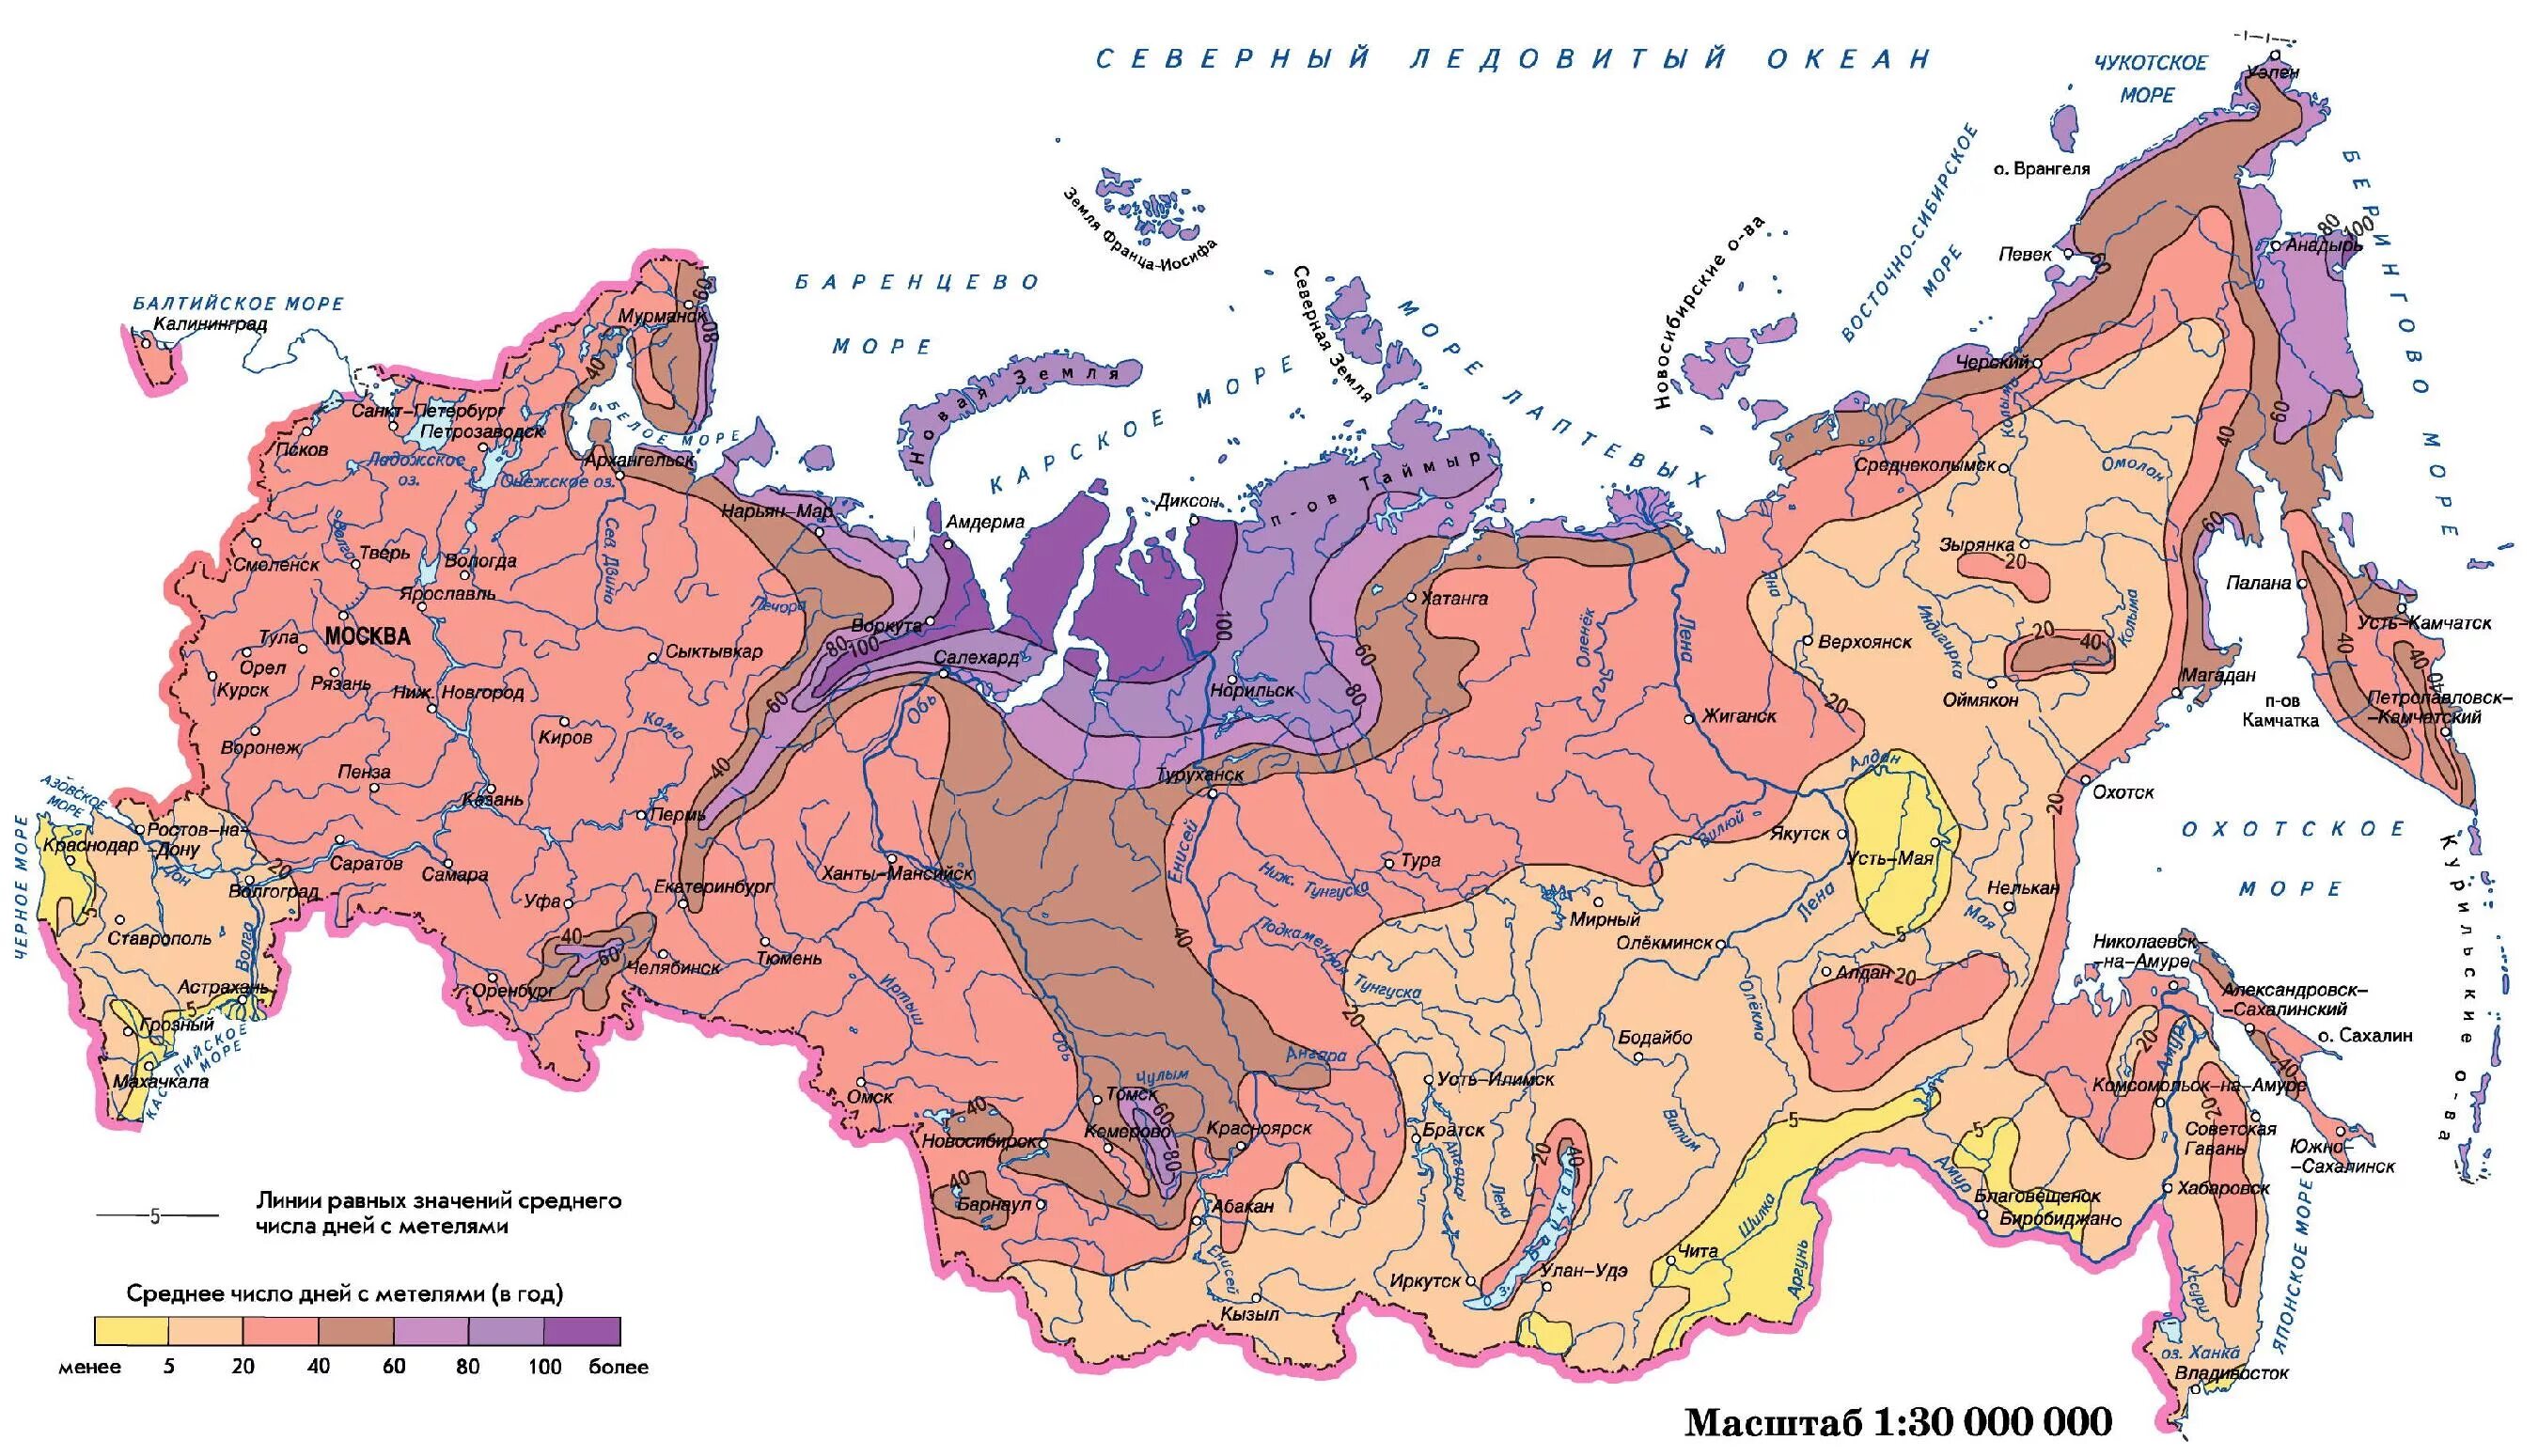 Тюмень над уровнем моря сколько. Географическая карта России высота над уровнем моря. Карта высот над уровнем моря России. Карта высоты уровня моря Россия. Карта России по высоте над уровнем моря.